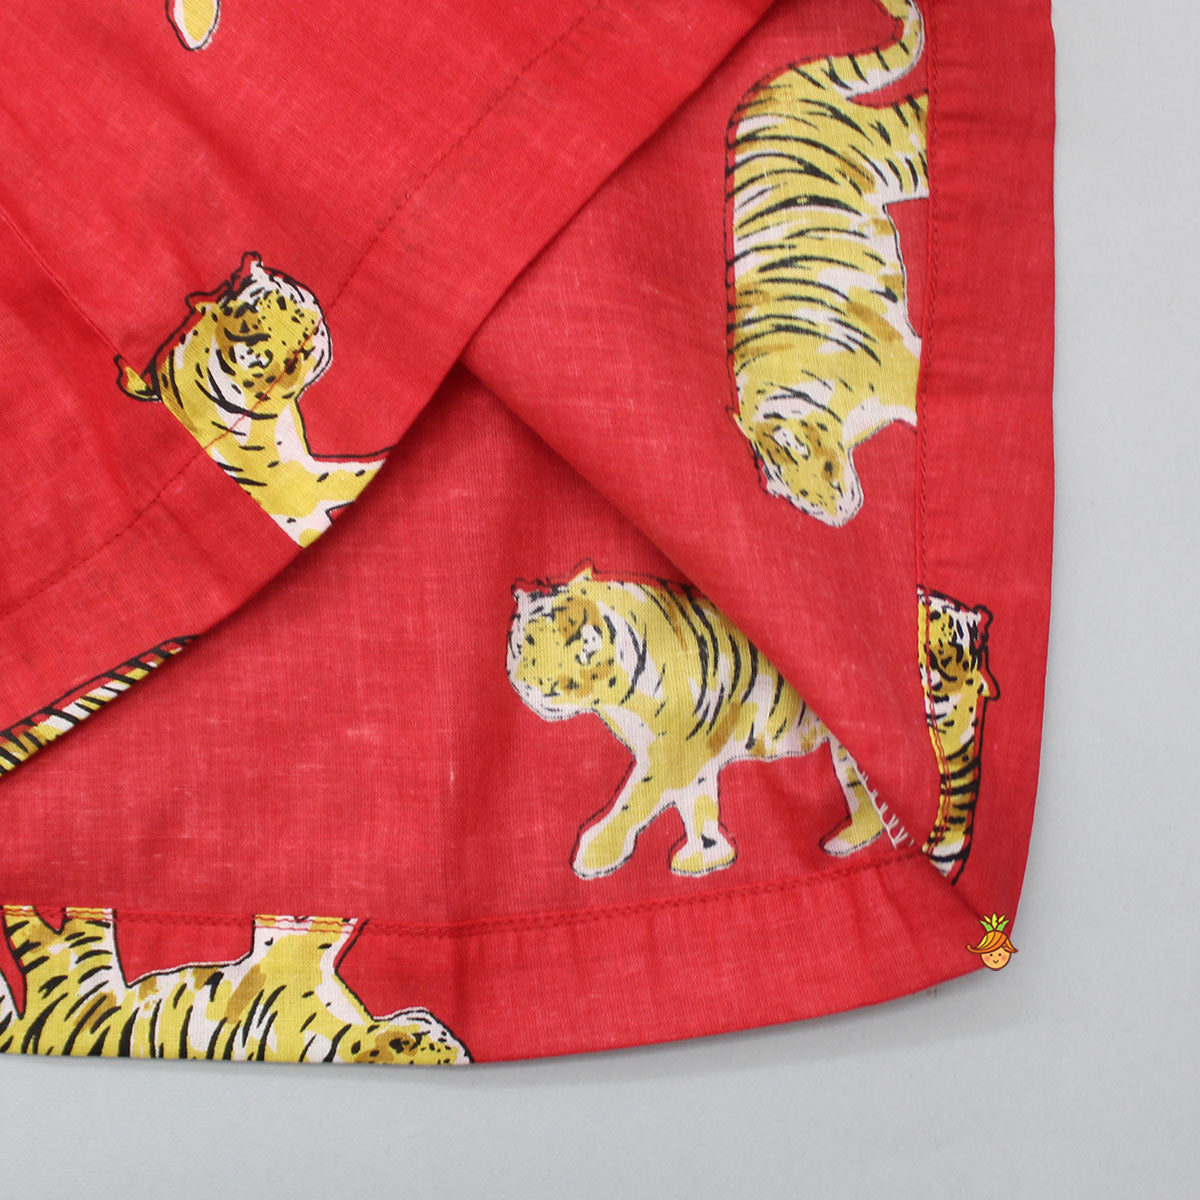 Tiger Printed Red Sleepwear